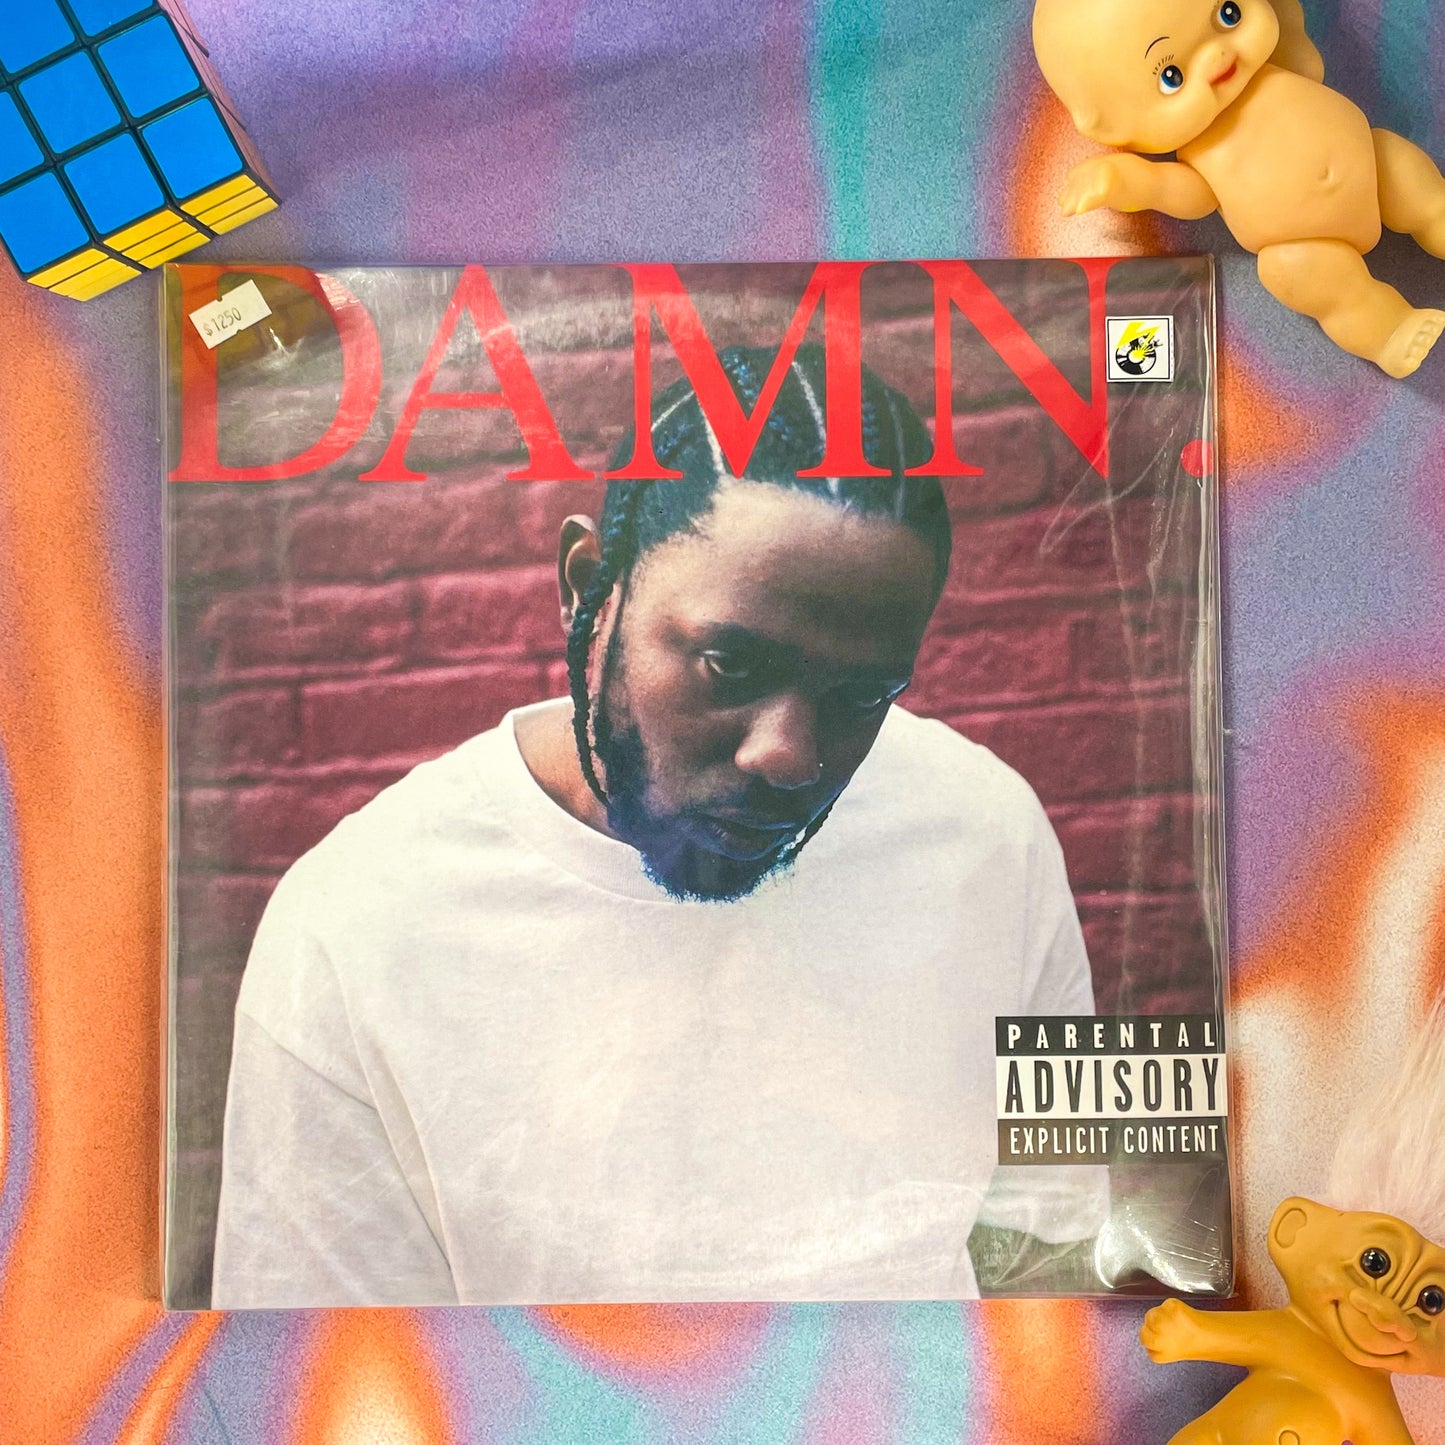 Kendrick Lamar - DAMN